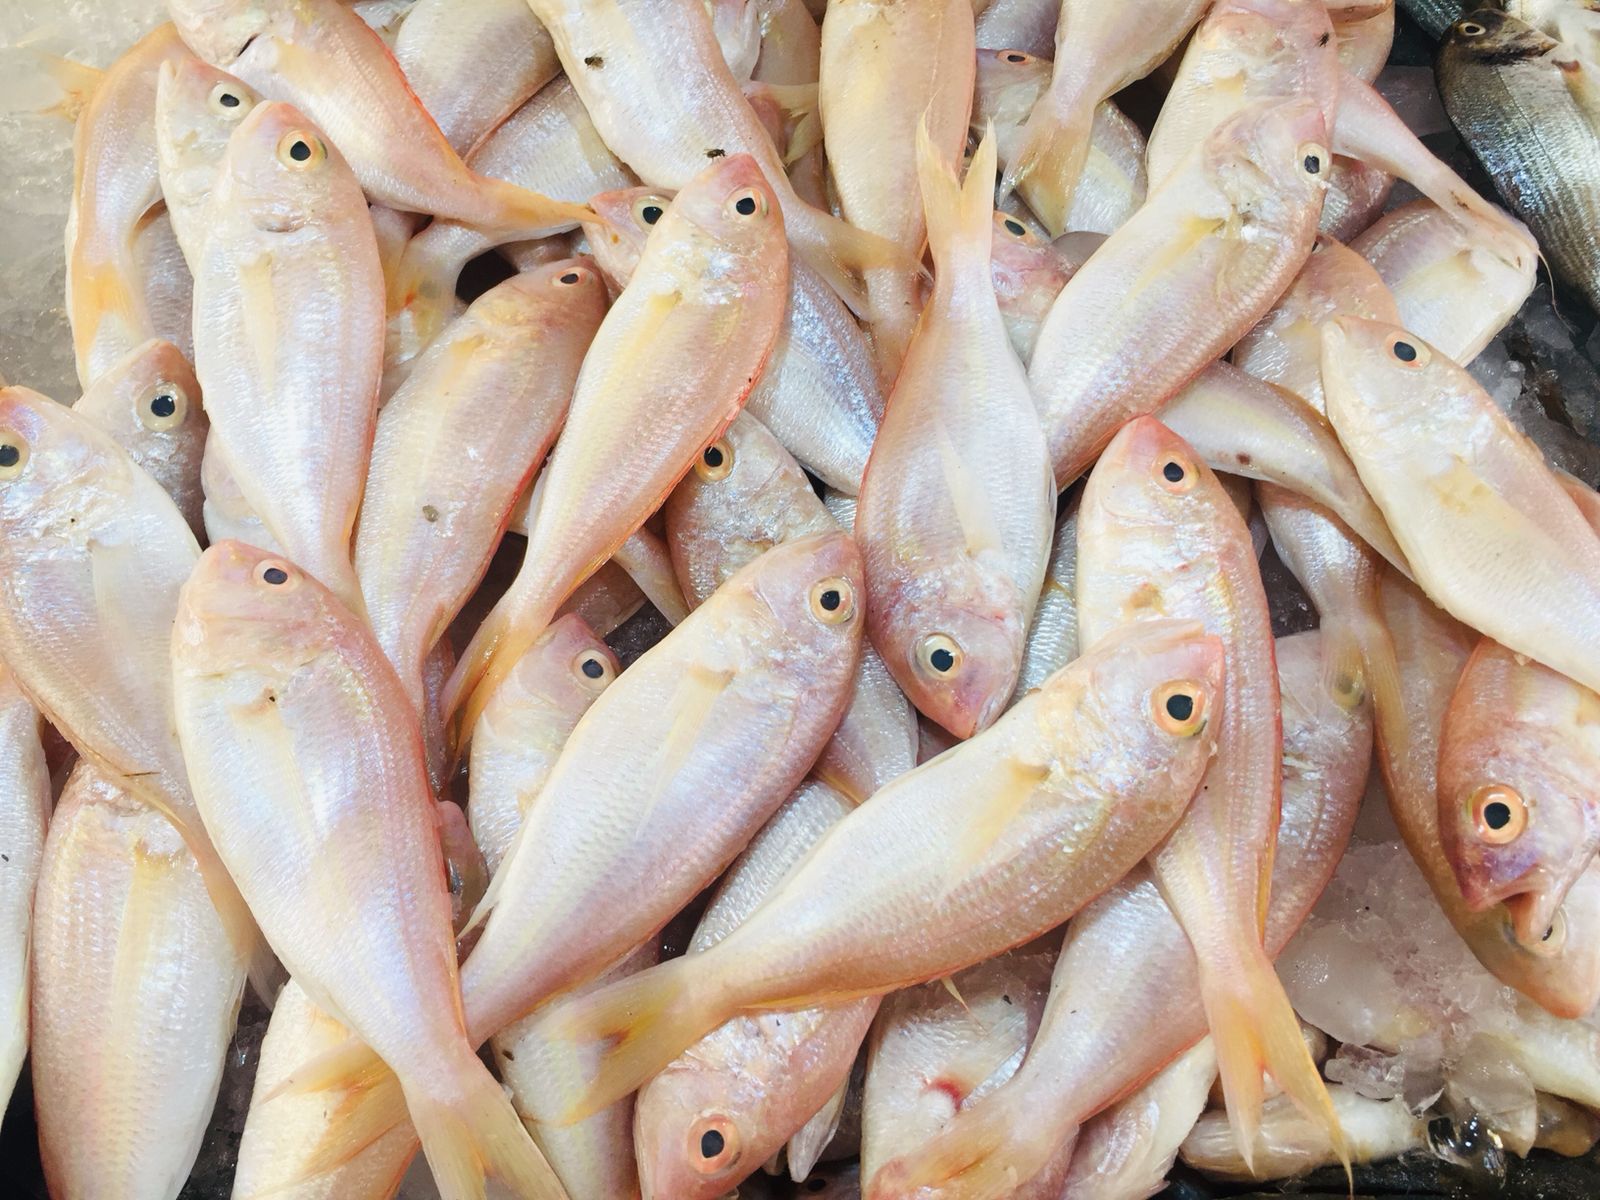 سوق الأنصارى للأسماك بمحافظة السويس (13)